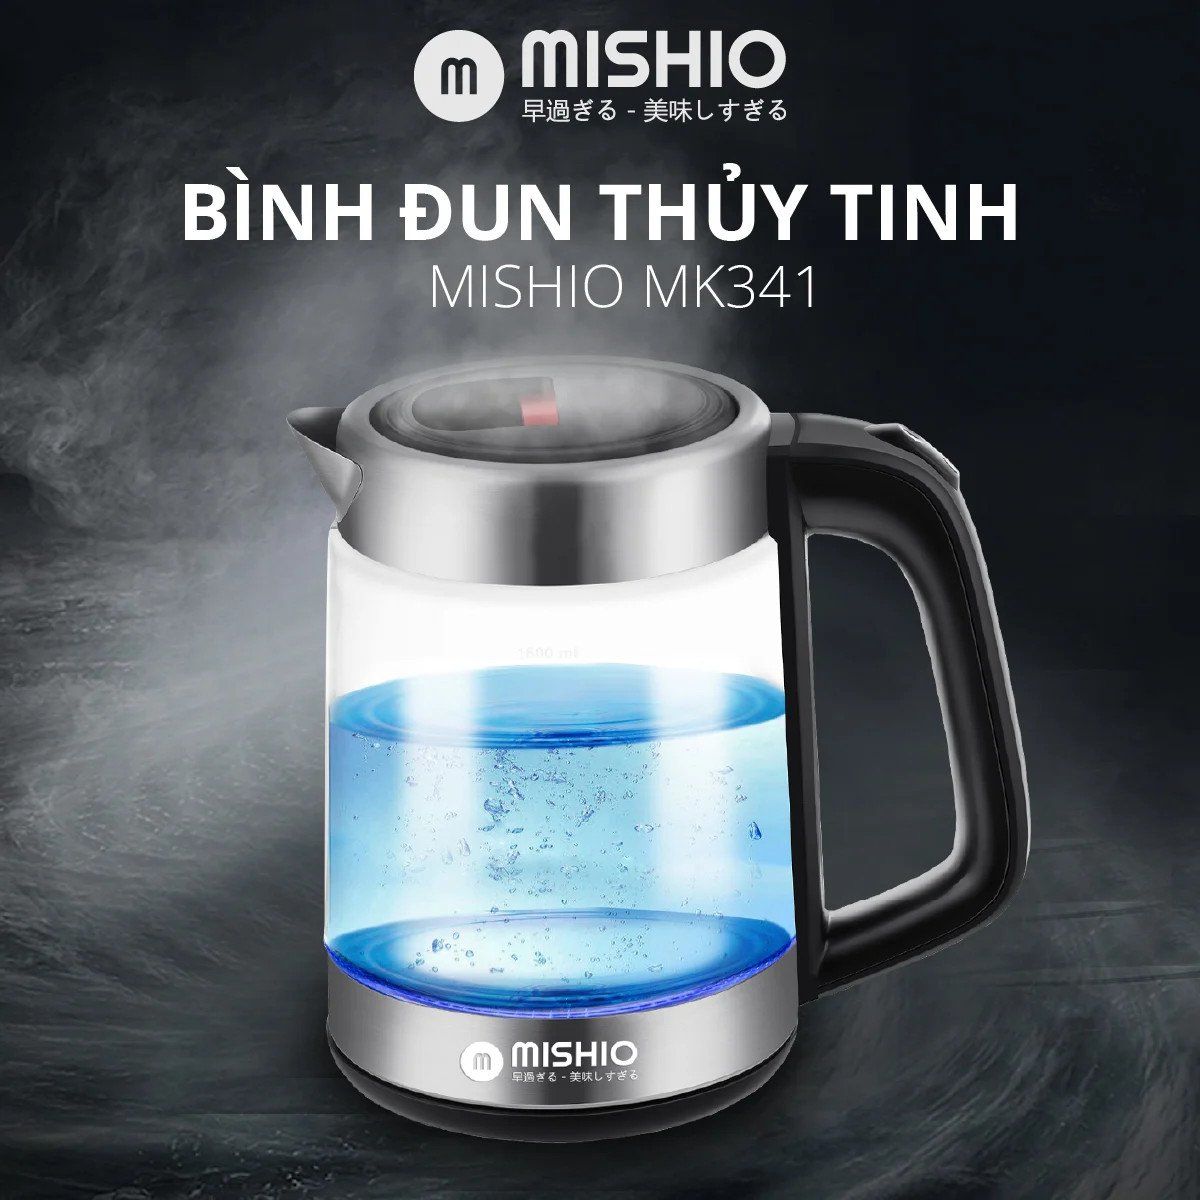  Bình đun thủy tinh Mishio MK341 mâm nhiệt inox 304 không gỉ sét 